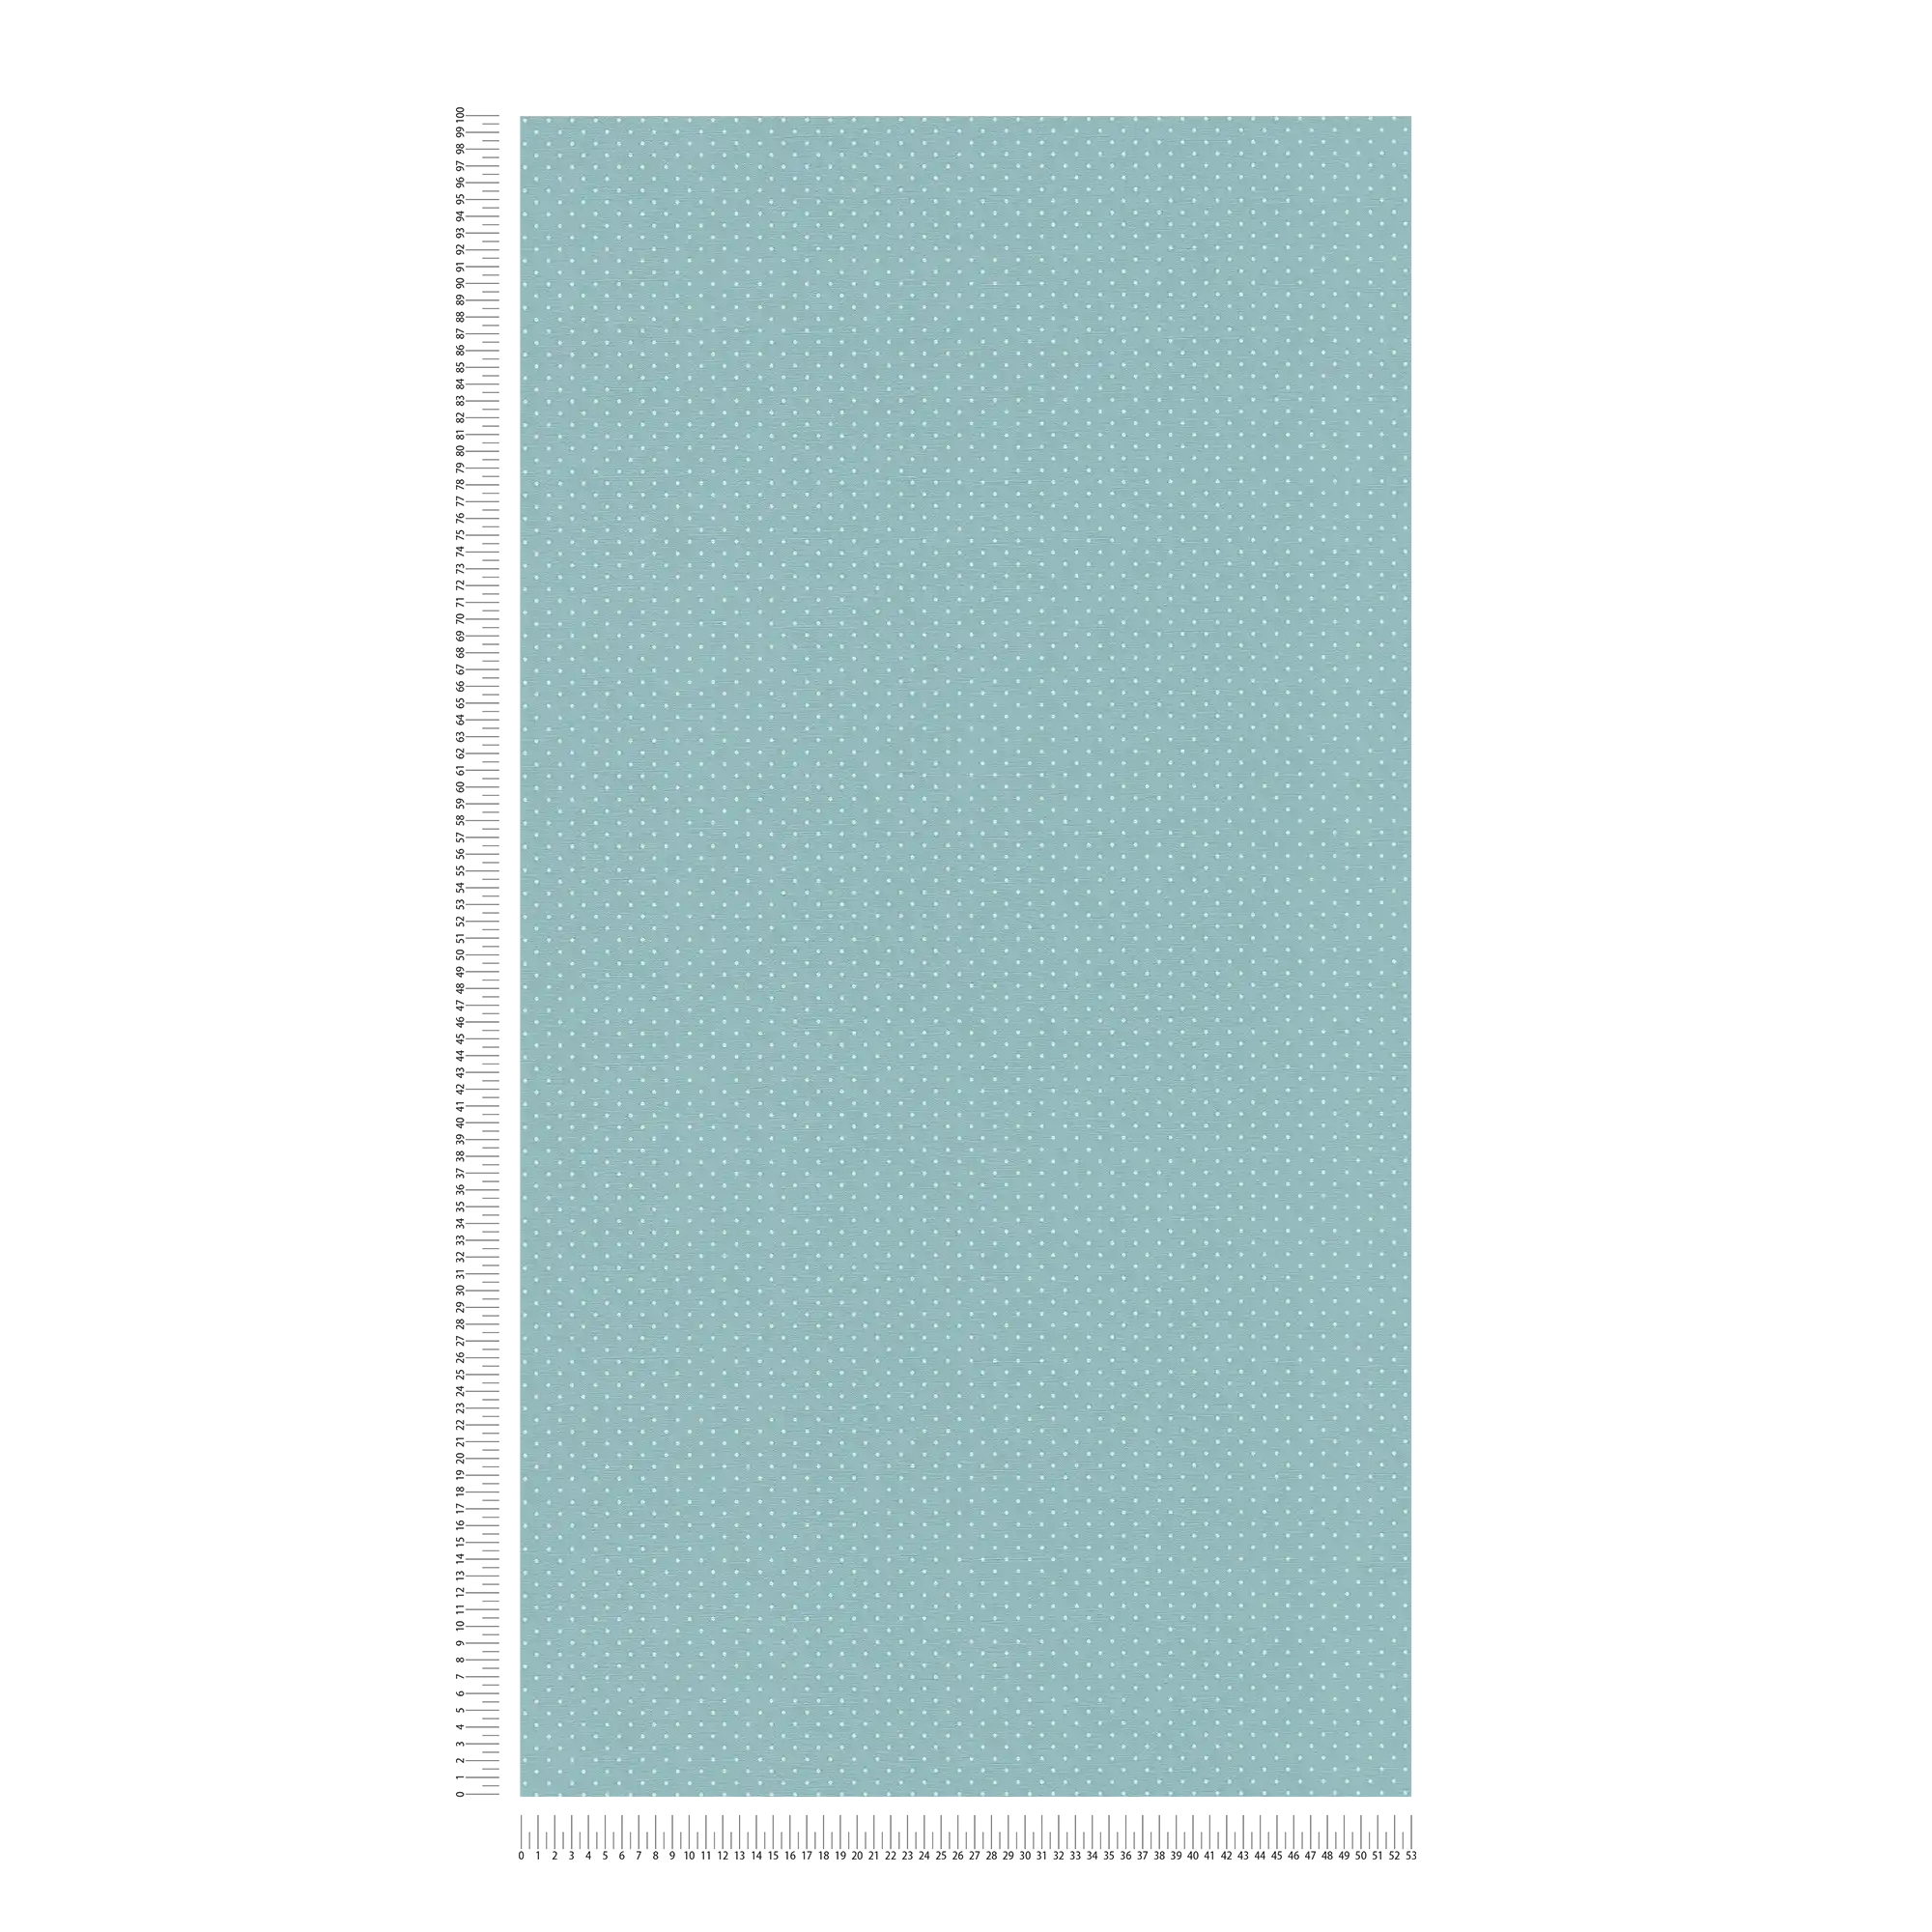             Papier peint intissé avec petits motifs à pois - bleu, blanc
        